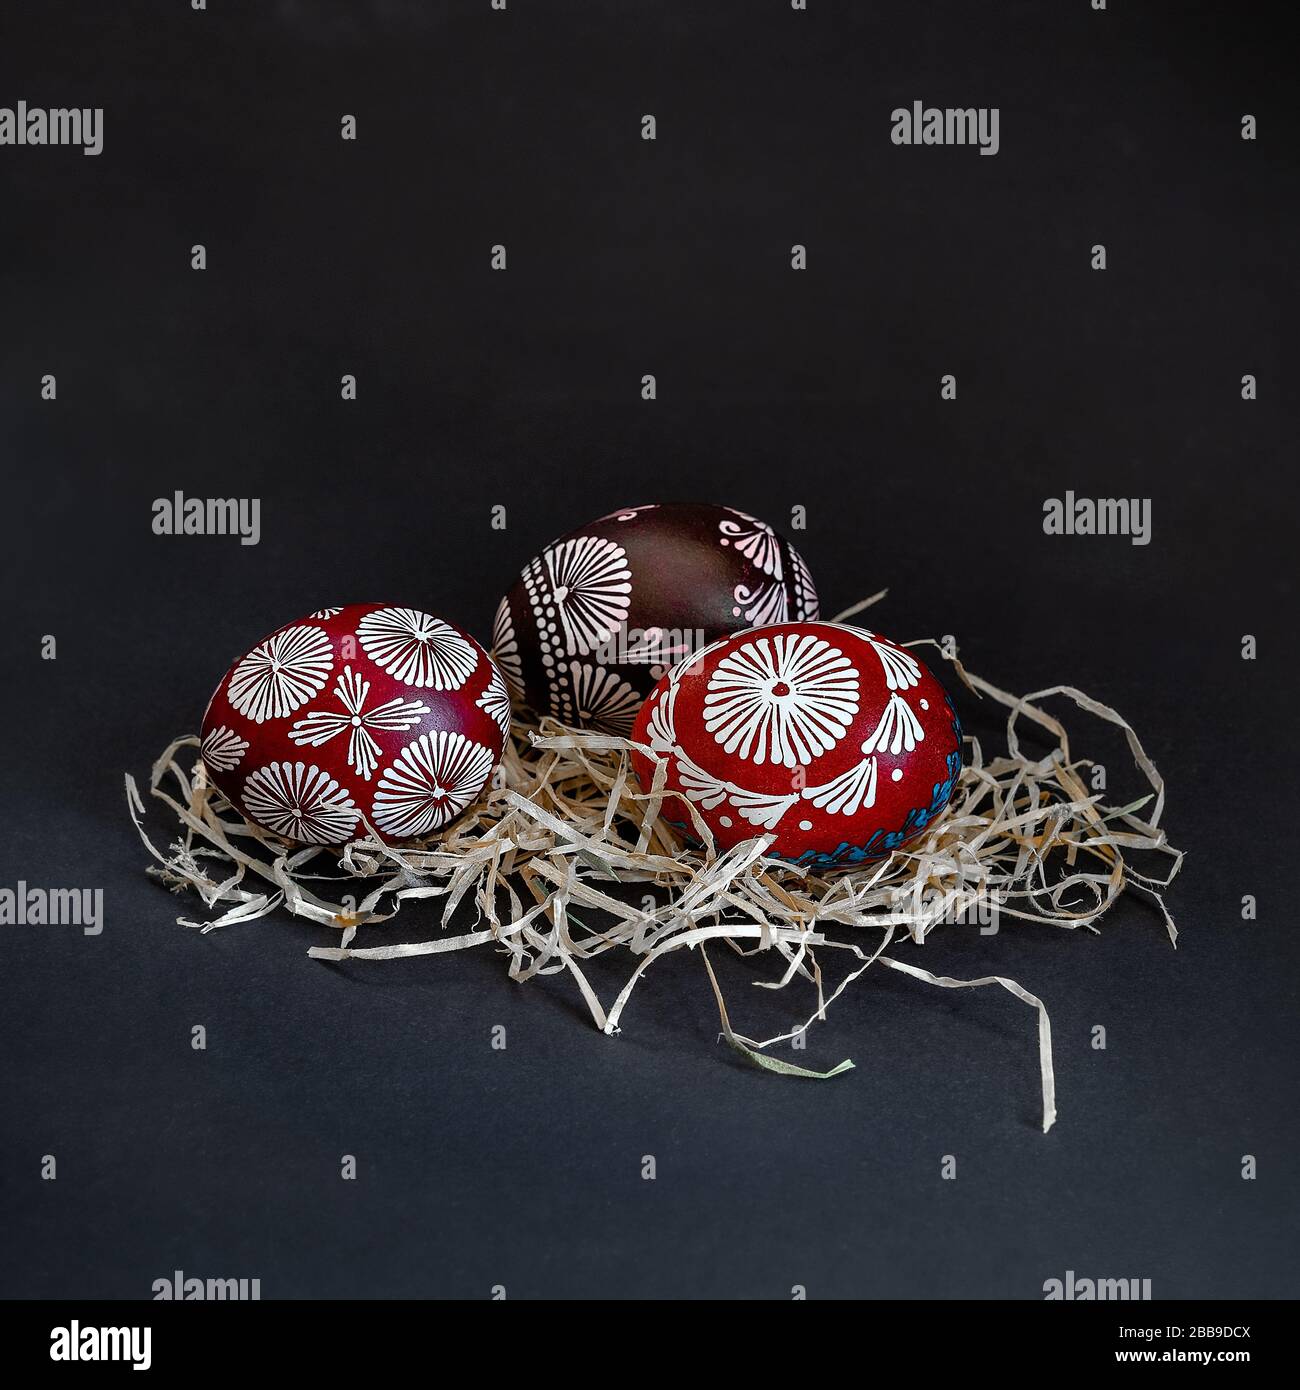 Trois œufs traditionnels lituaniens peints en rouge, noir, blanc et bleu avec de la cire, appelés marguciai, dans le nid de paille sur fond noir. Copier le collage Banque D'Images